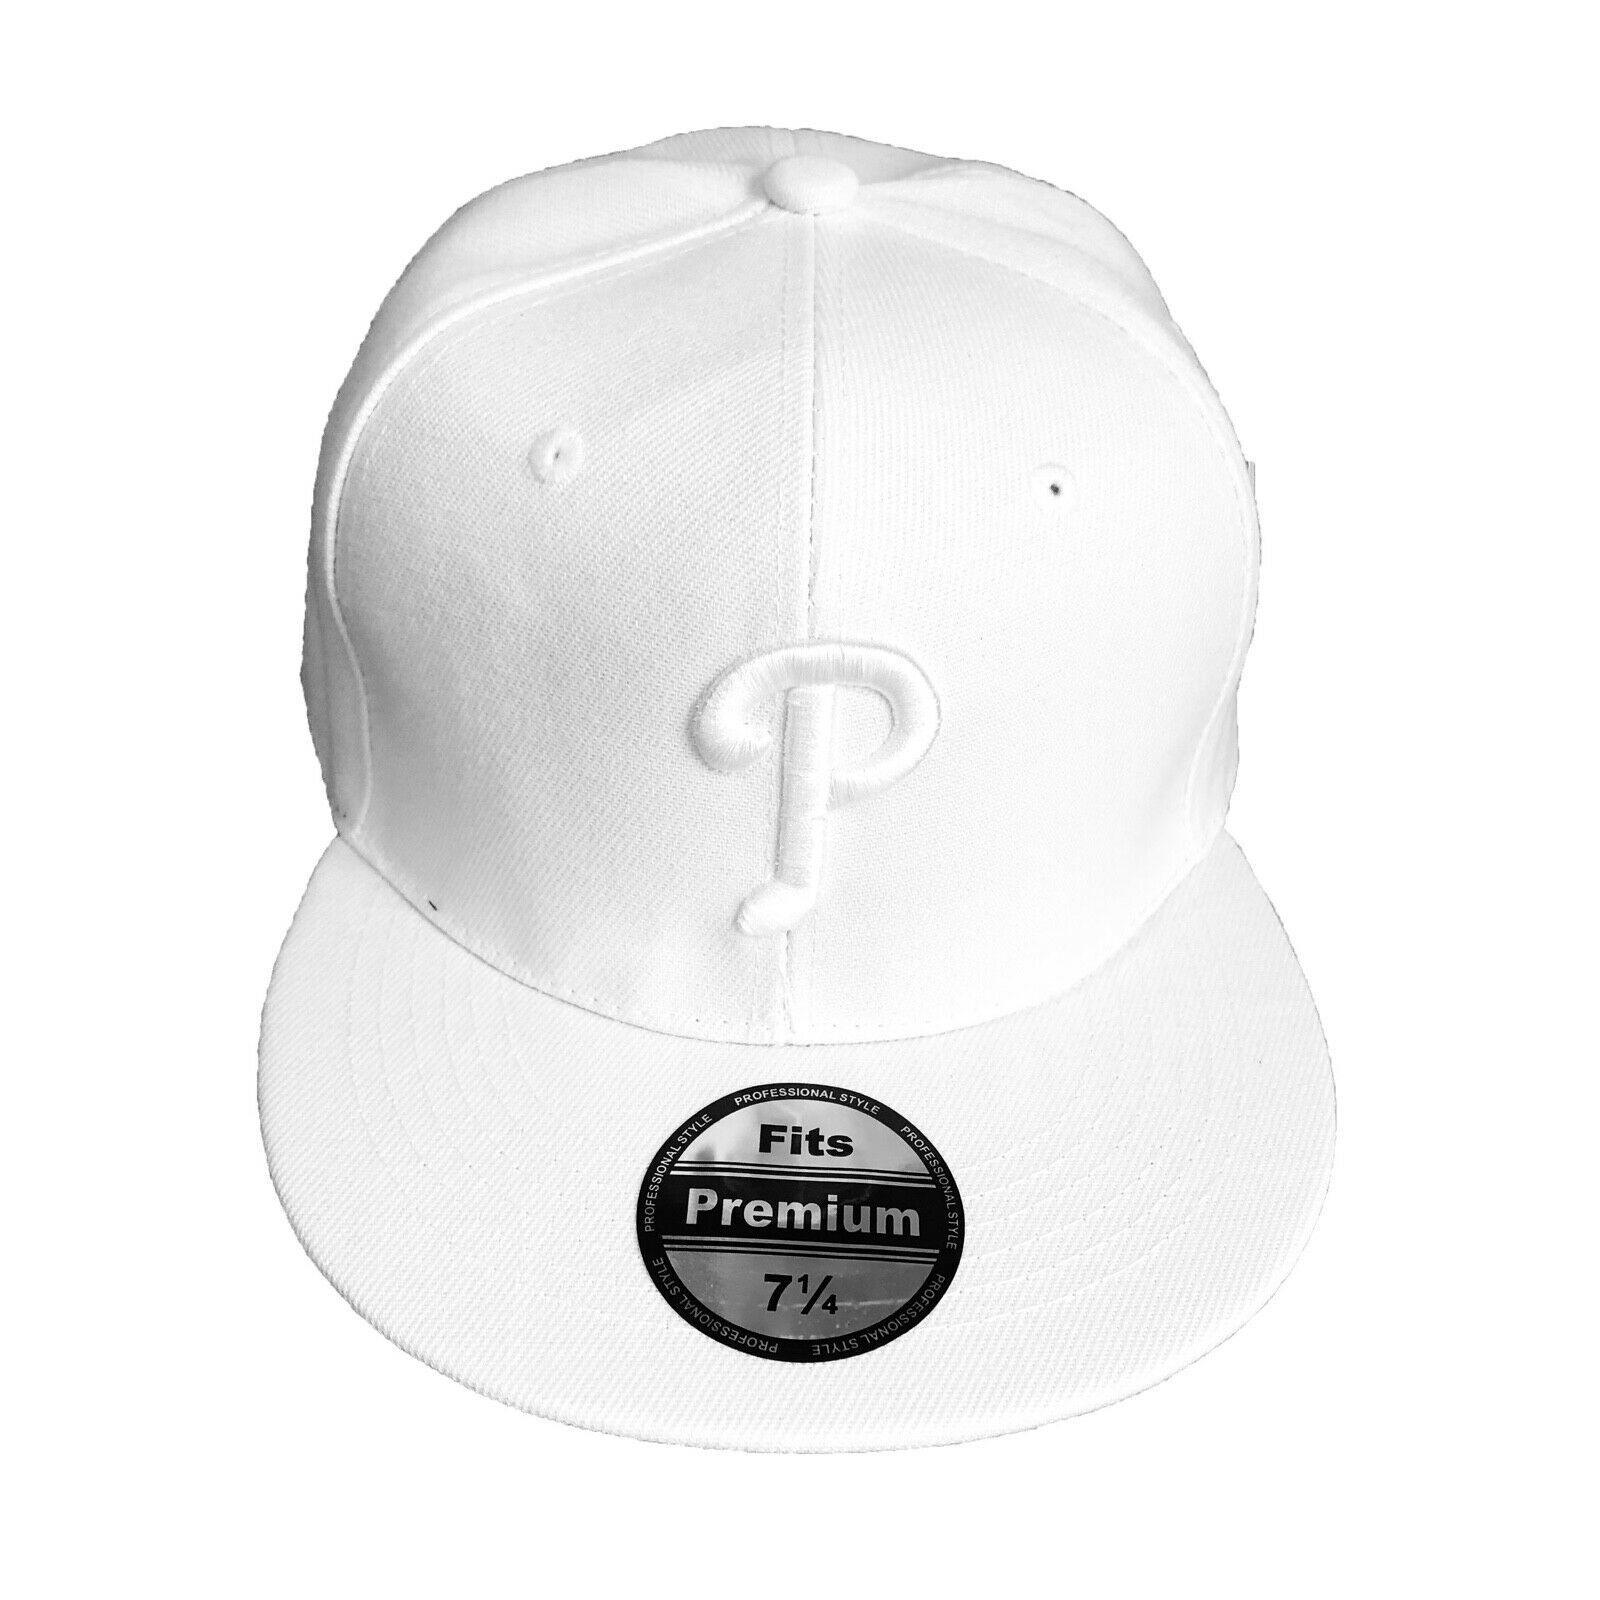 NEW Mens Philadelphia Phillies Baseball Cap Fitted Hat Multi Size White